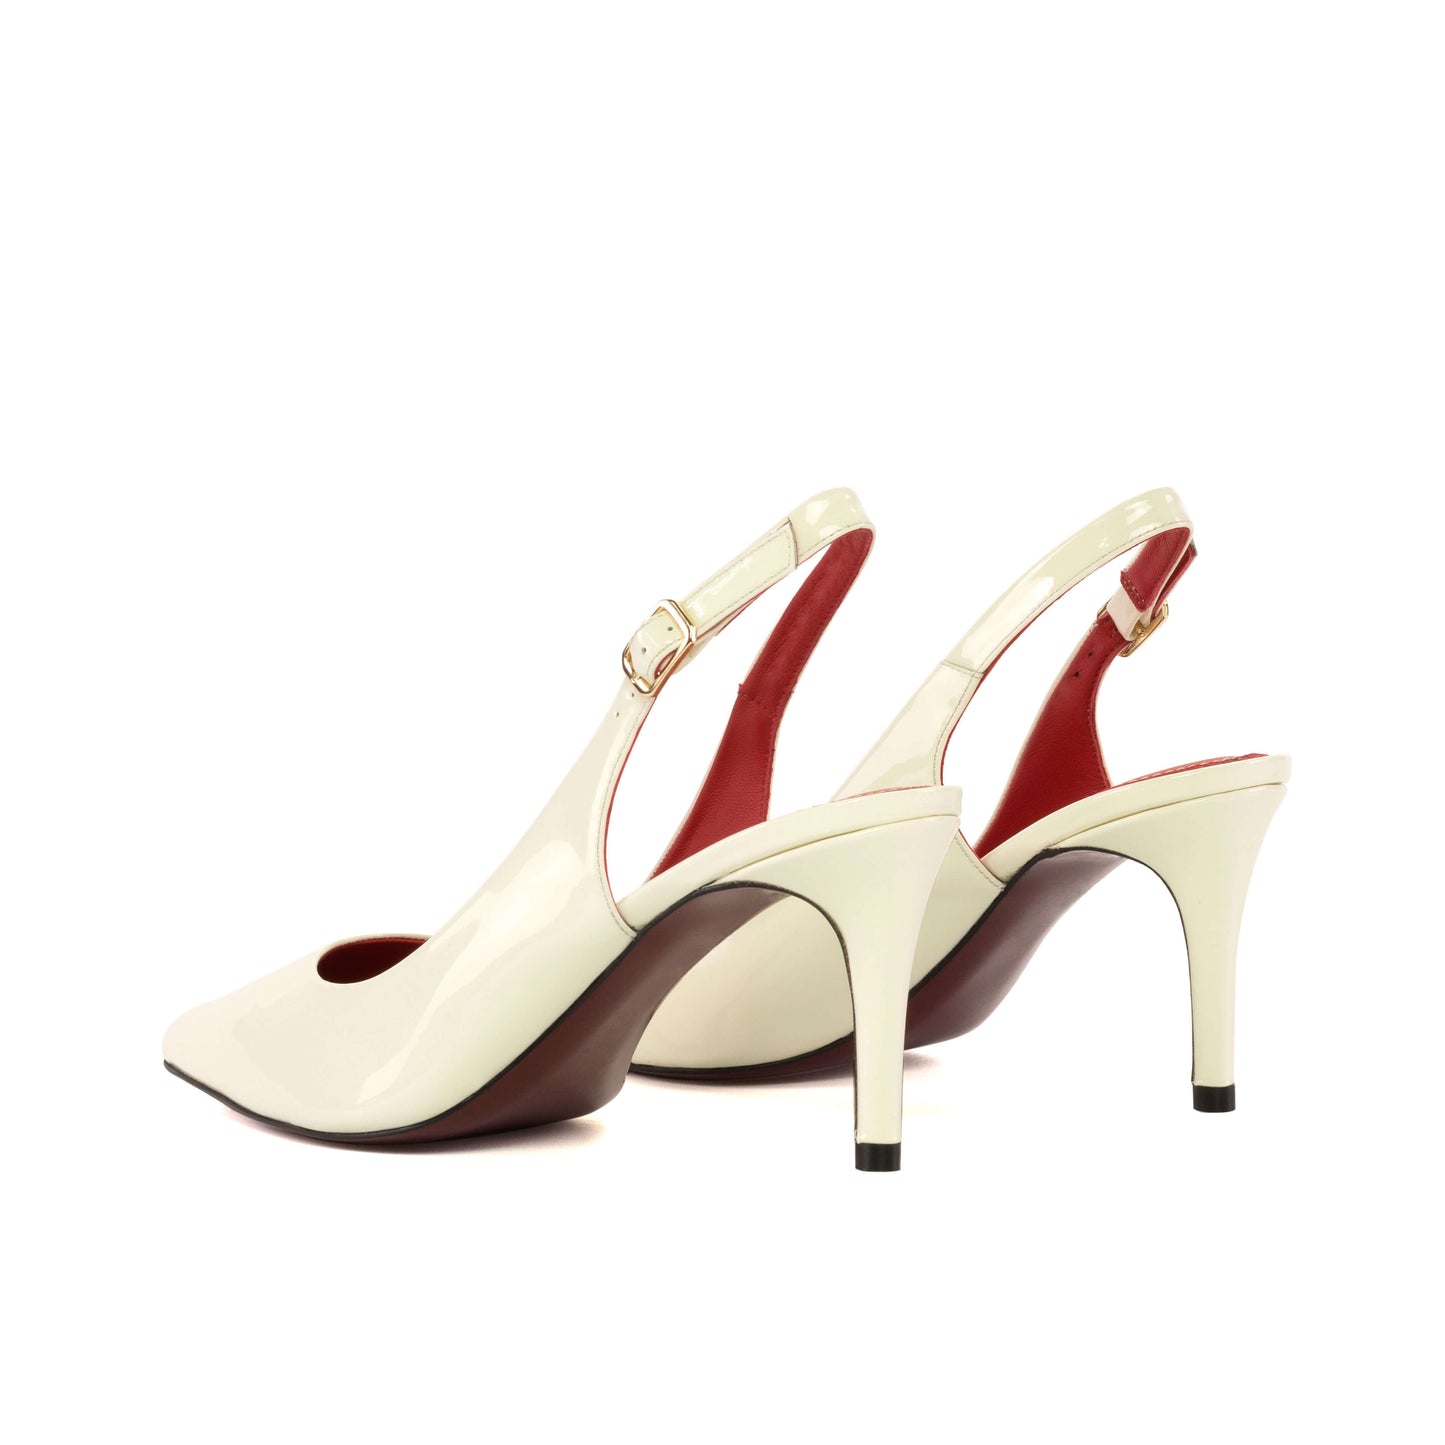 Bologna White Stiletto Heels